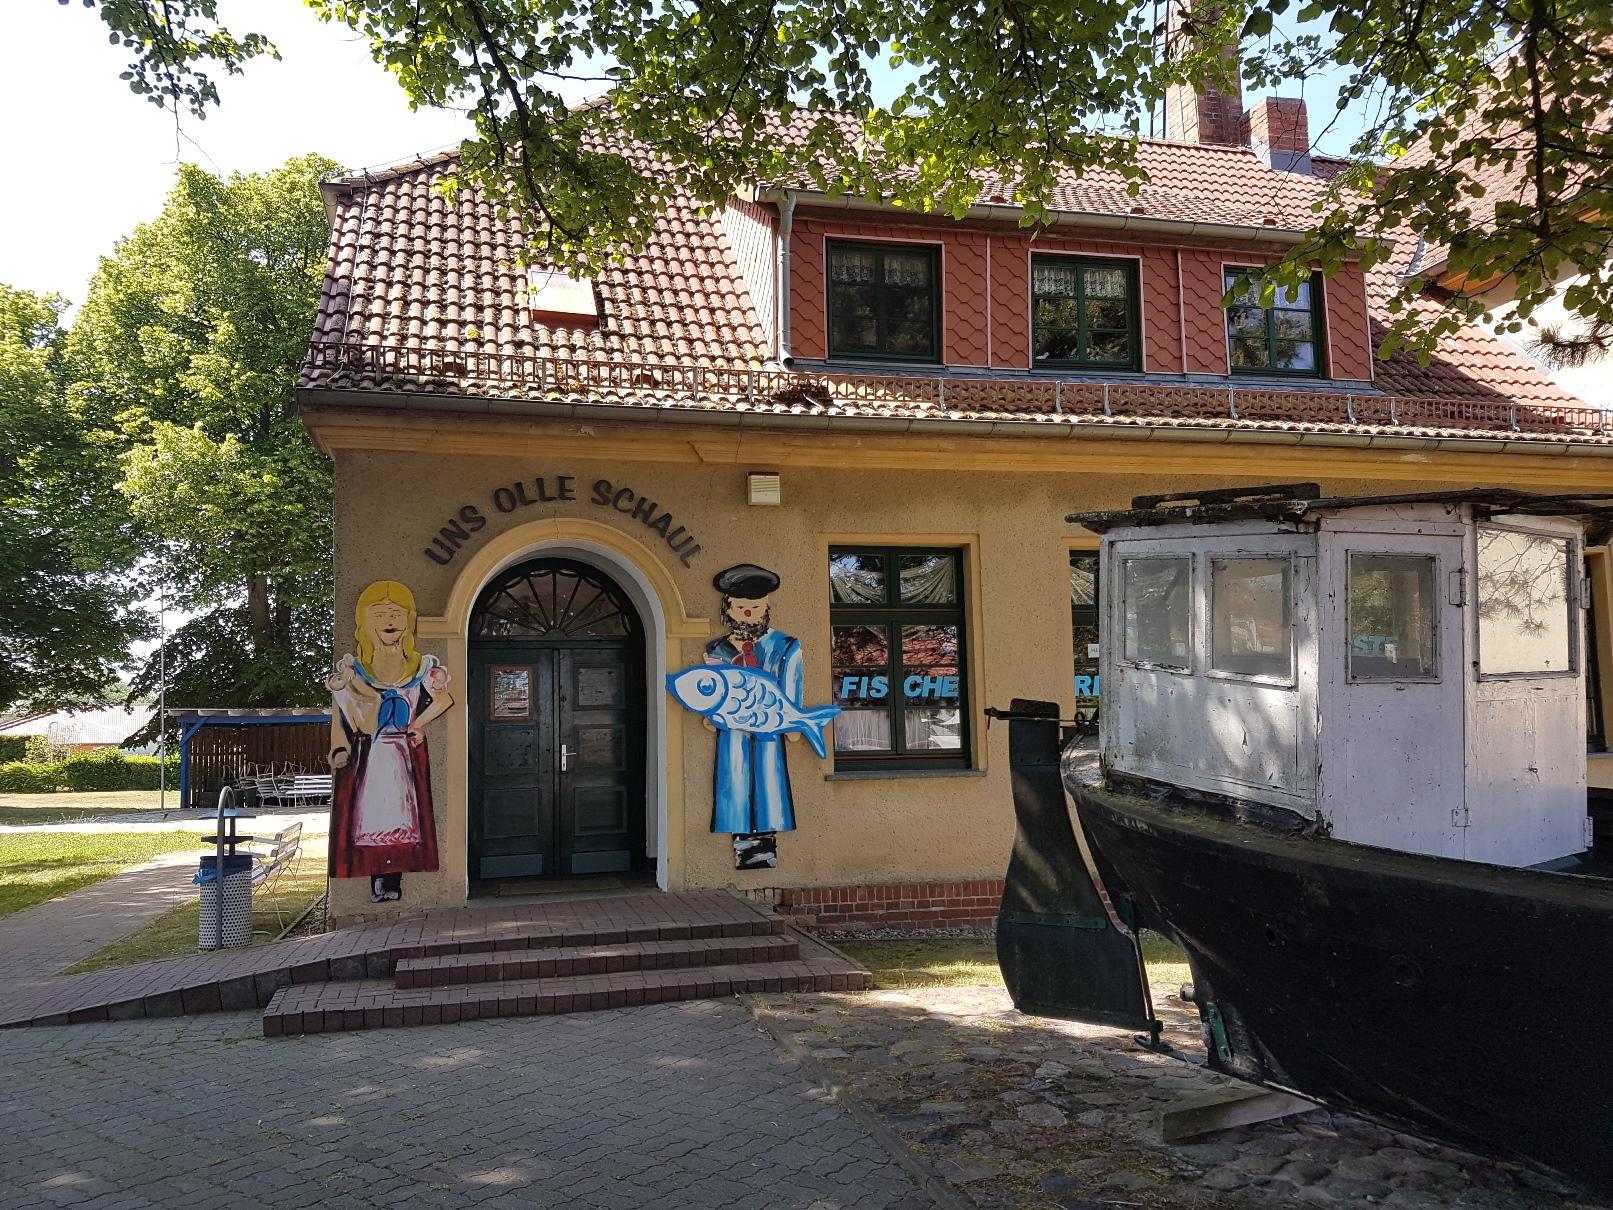 Das Heimatmuseum "Uns olle Schaul" steht mitten im Ortskern des Seebad Zempin